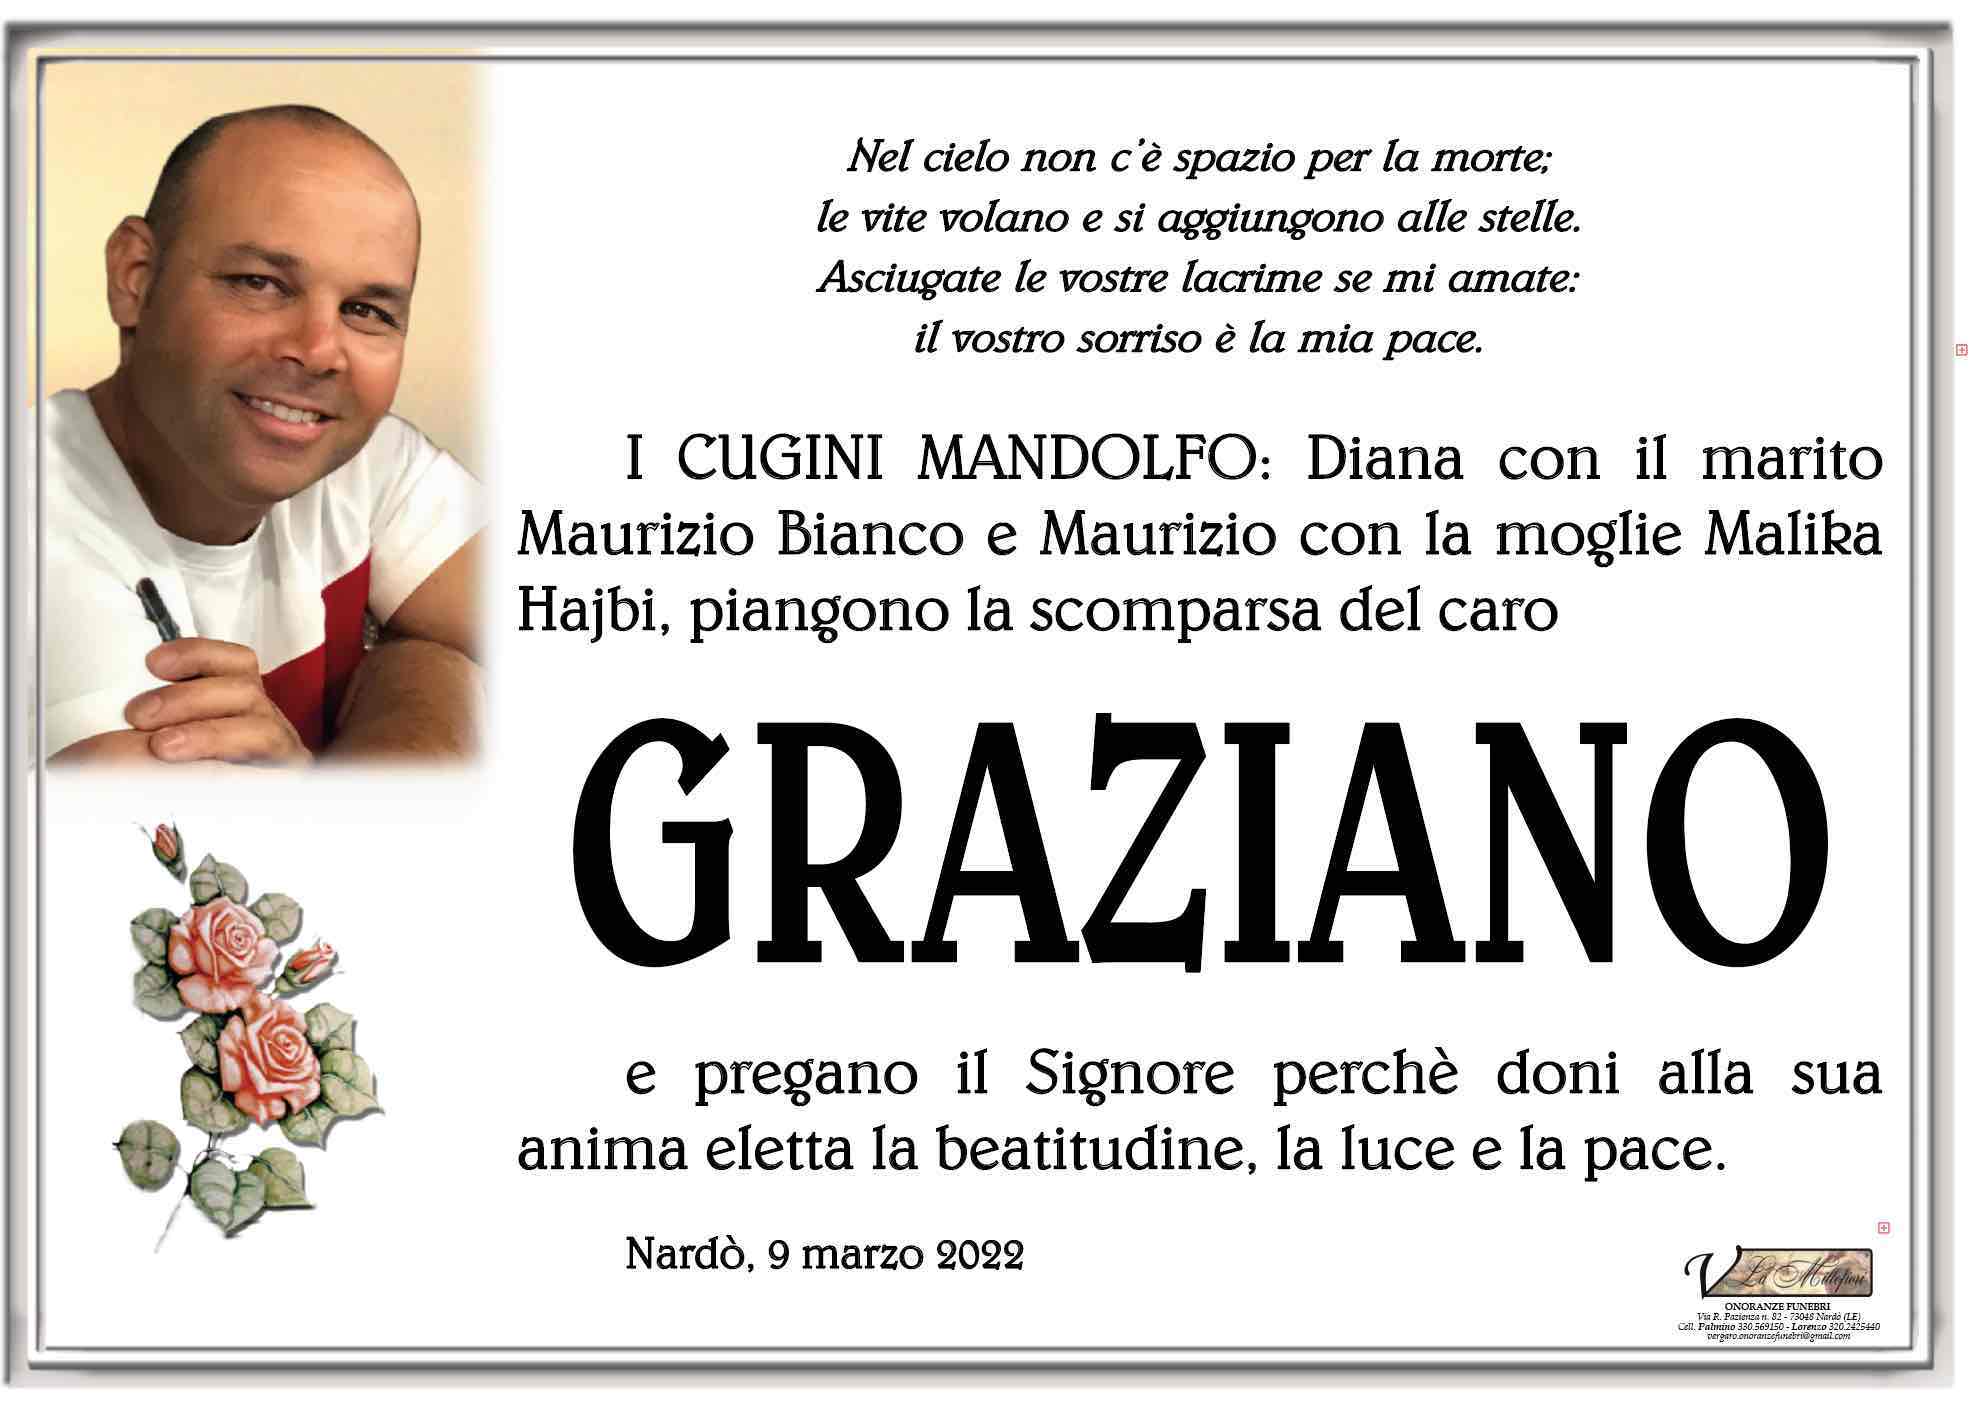 Graziano Mandolfo